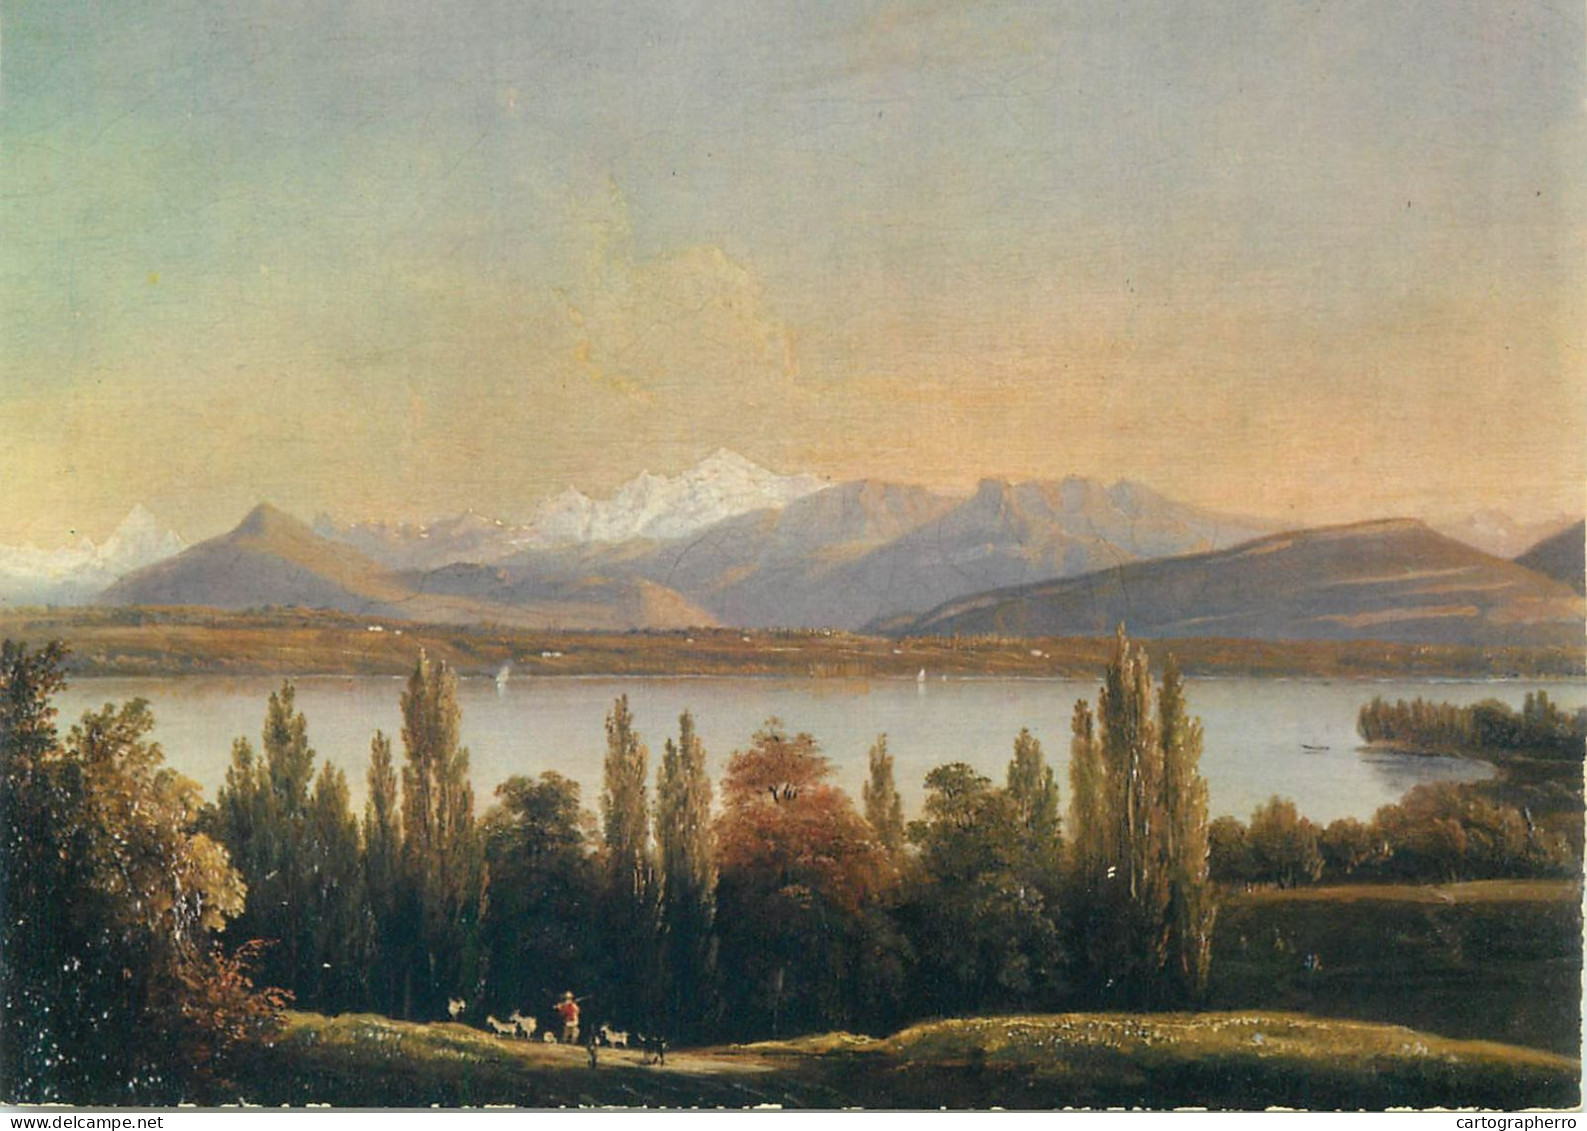 Switzerland Le Lac  Et Le Mont Blanc Paysage Naturel Depuis Pregny Ecole Genvoise Vers 1830 - Pregny-Chambésy